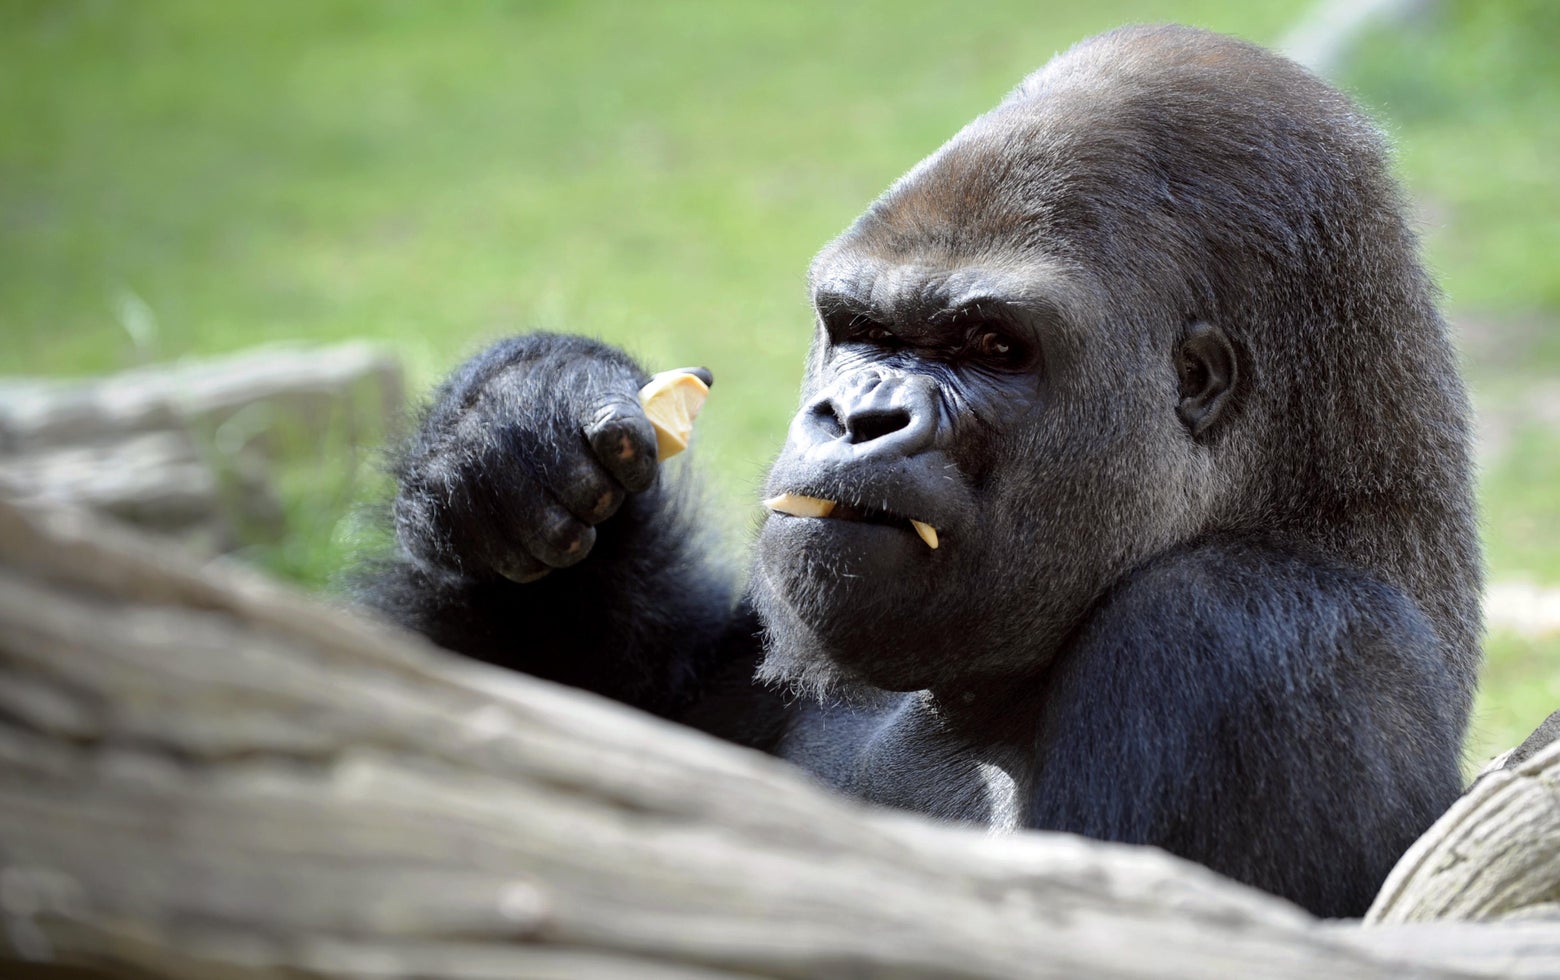 gorillas fighting other animals